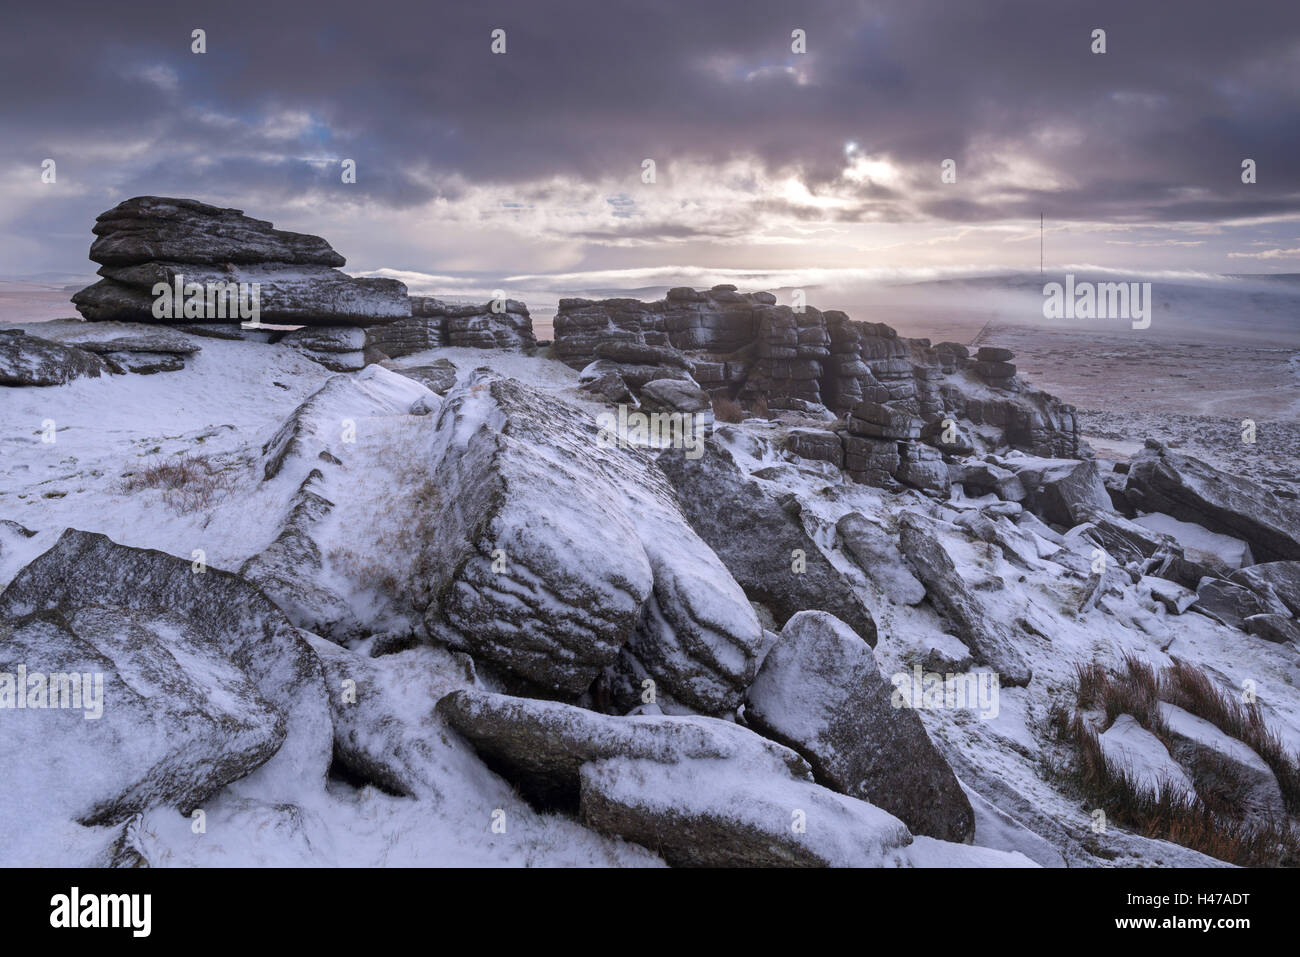 Les roches de granit couvert de neige à Grand Métis Tor, Dartmoor National Park, Devon, Angleterre. L'hiver (Janvier) 2015. Banque D'Images